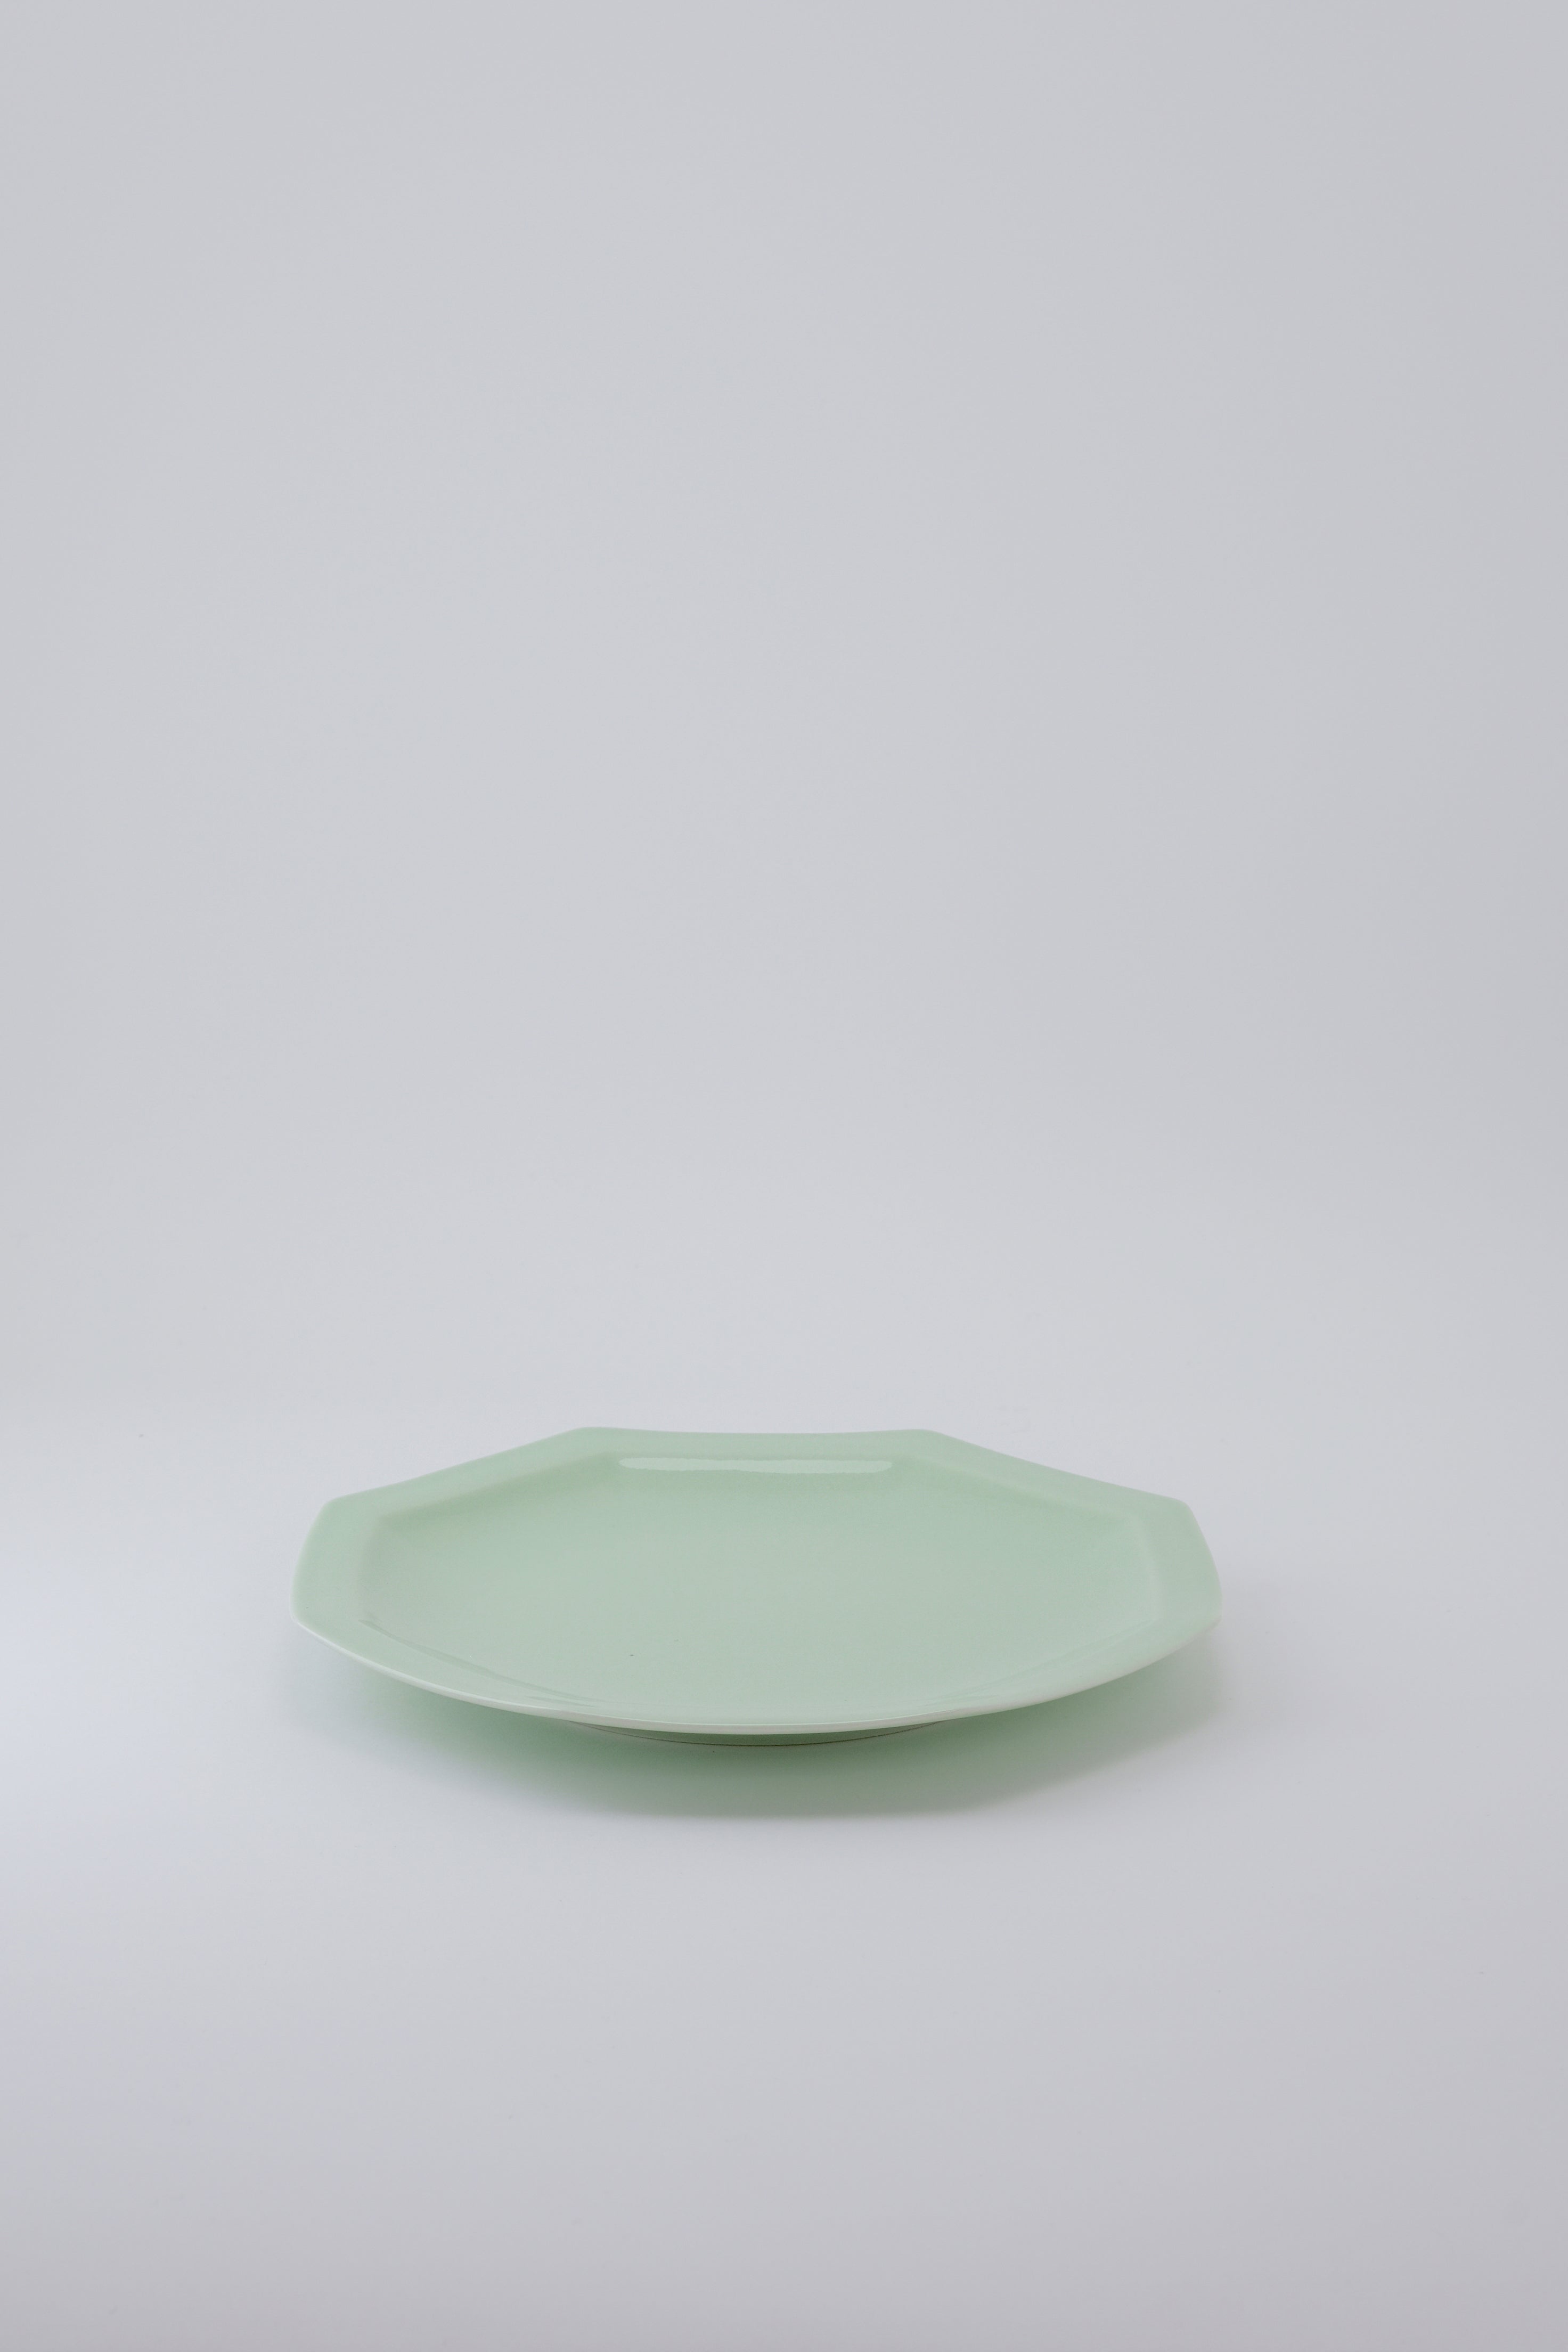 Octangle lunch plate mint-Ogre-[interior]-[design]-KIOSK48TH